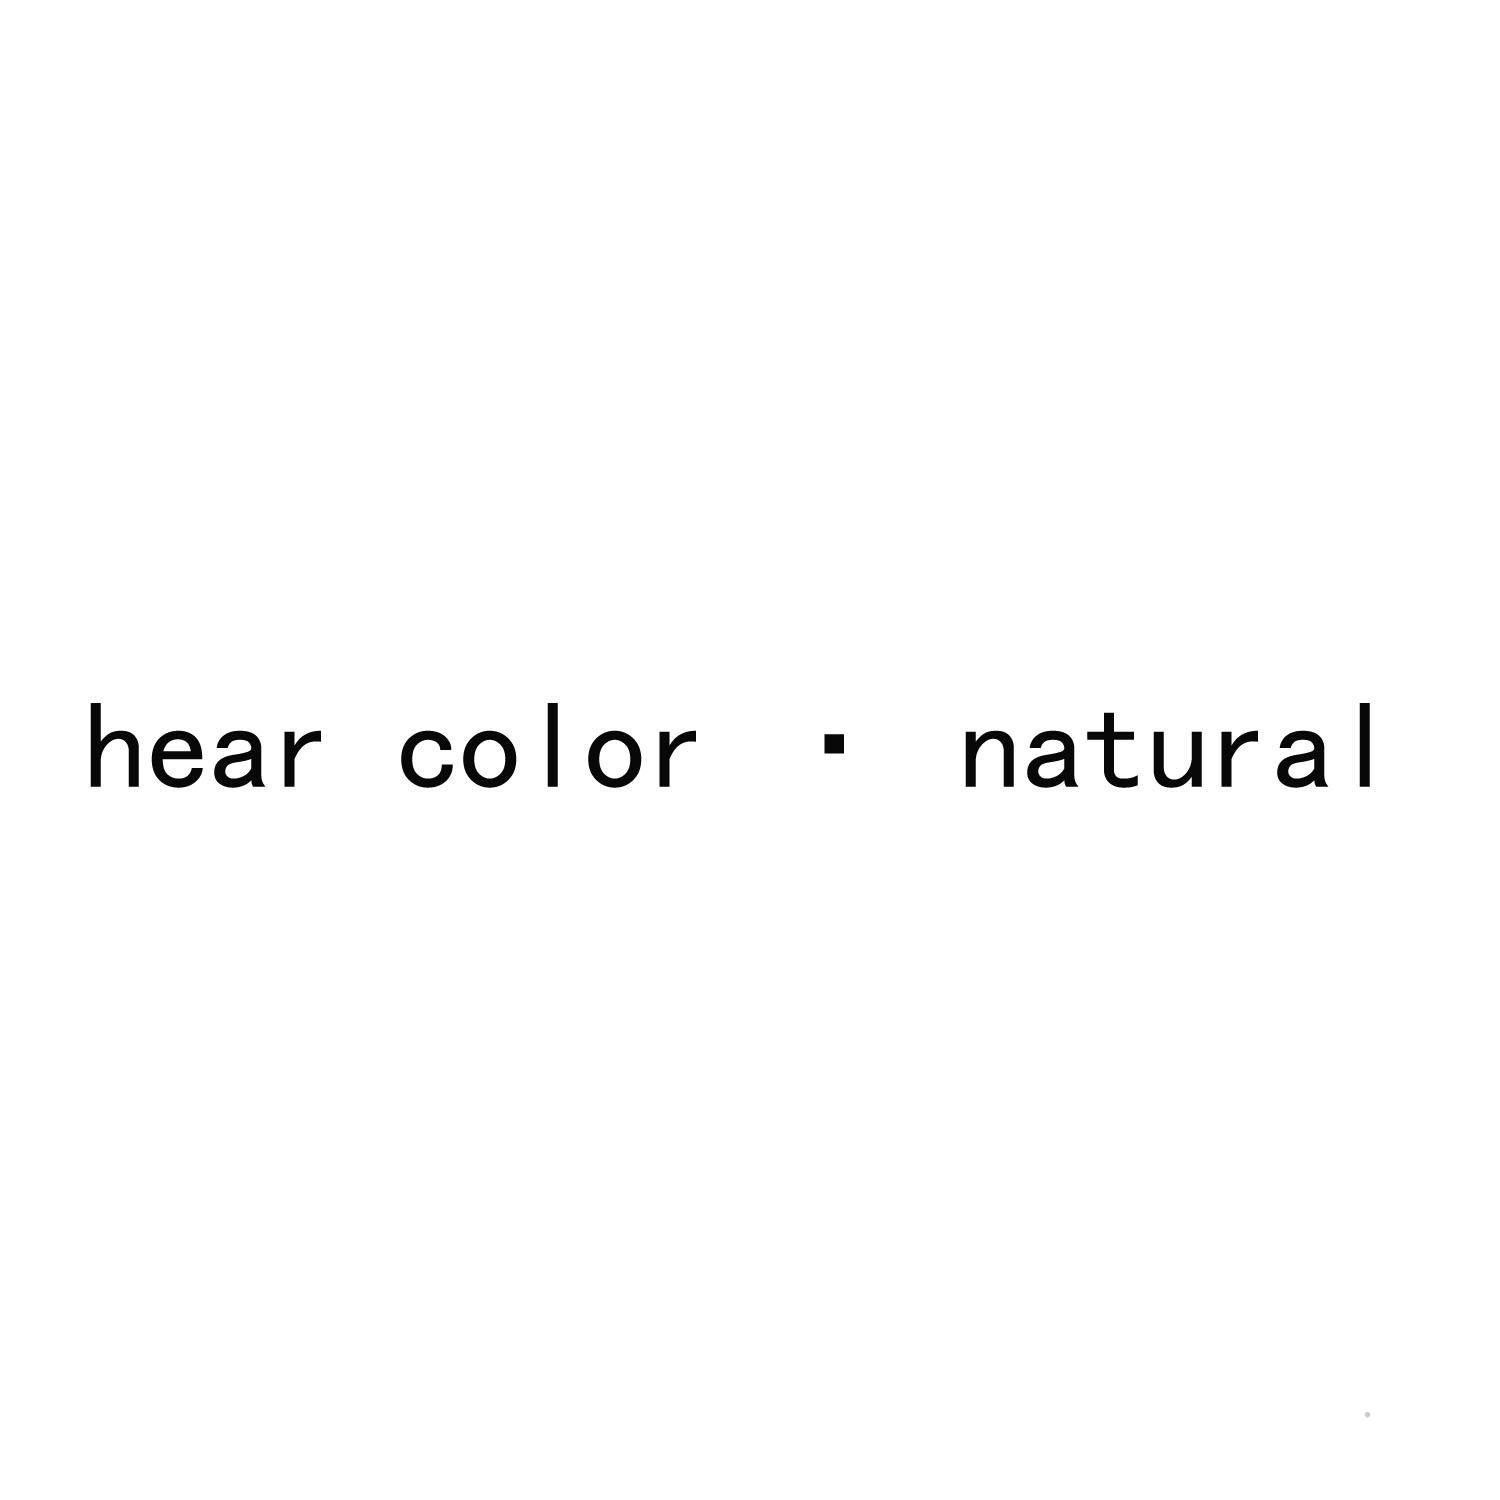 HEAR COLOR·NATURALlogo